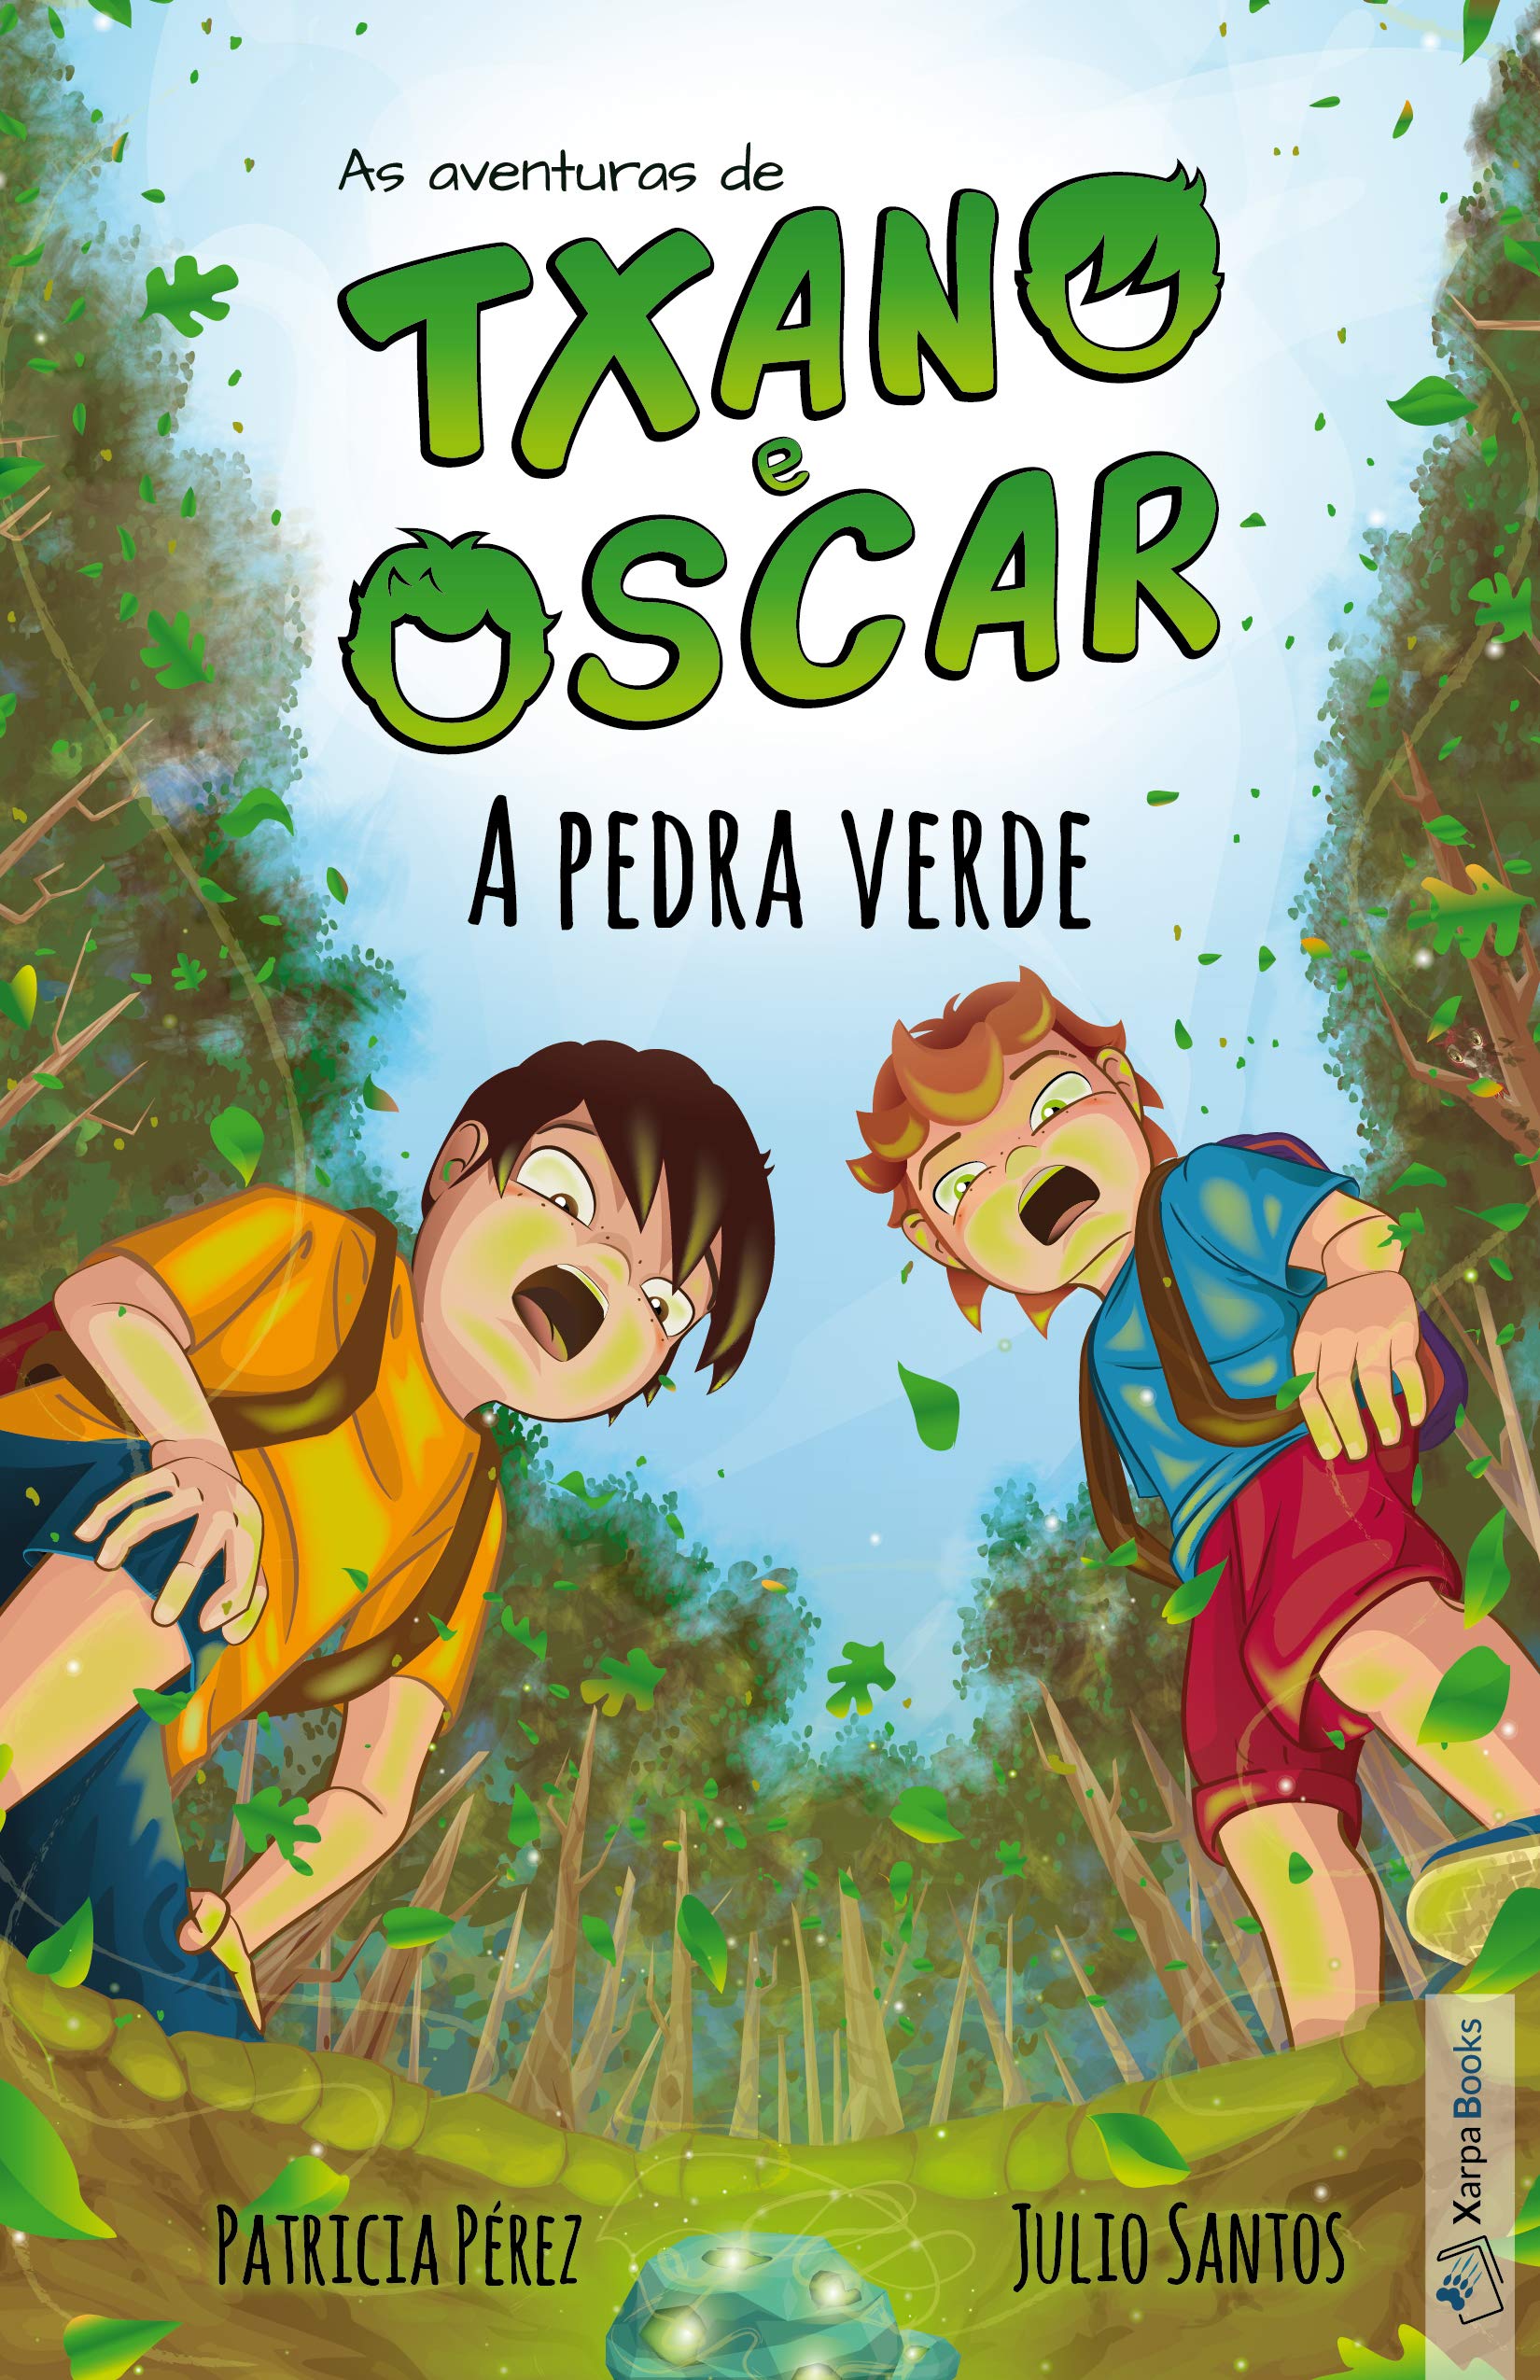 Txano e Oscar 1 - A pedra verde: Livros infantis de mistério e aventura (7-12 anos) (As aventuras de Txano e Oscar) (Portuguese Edition)